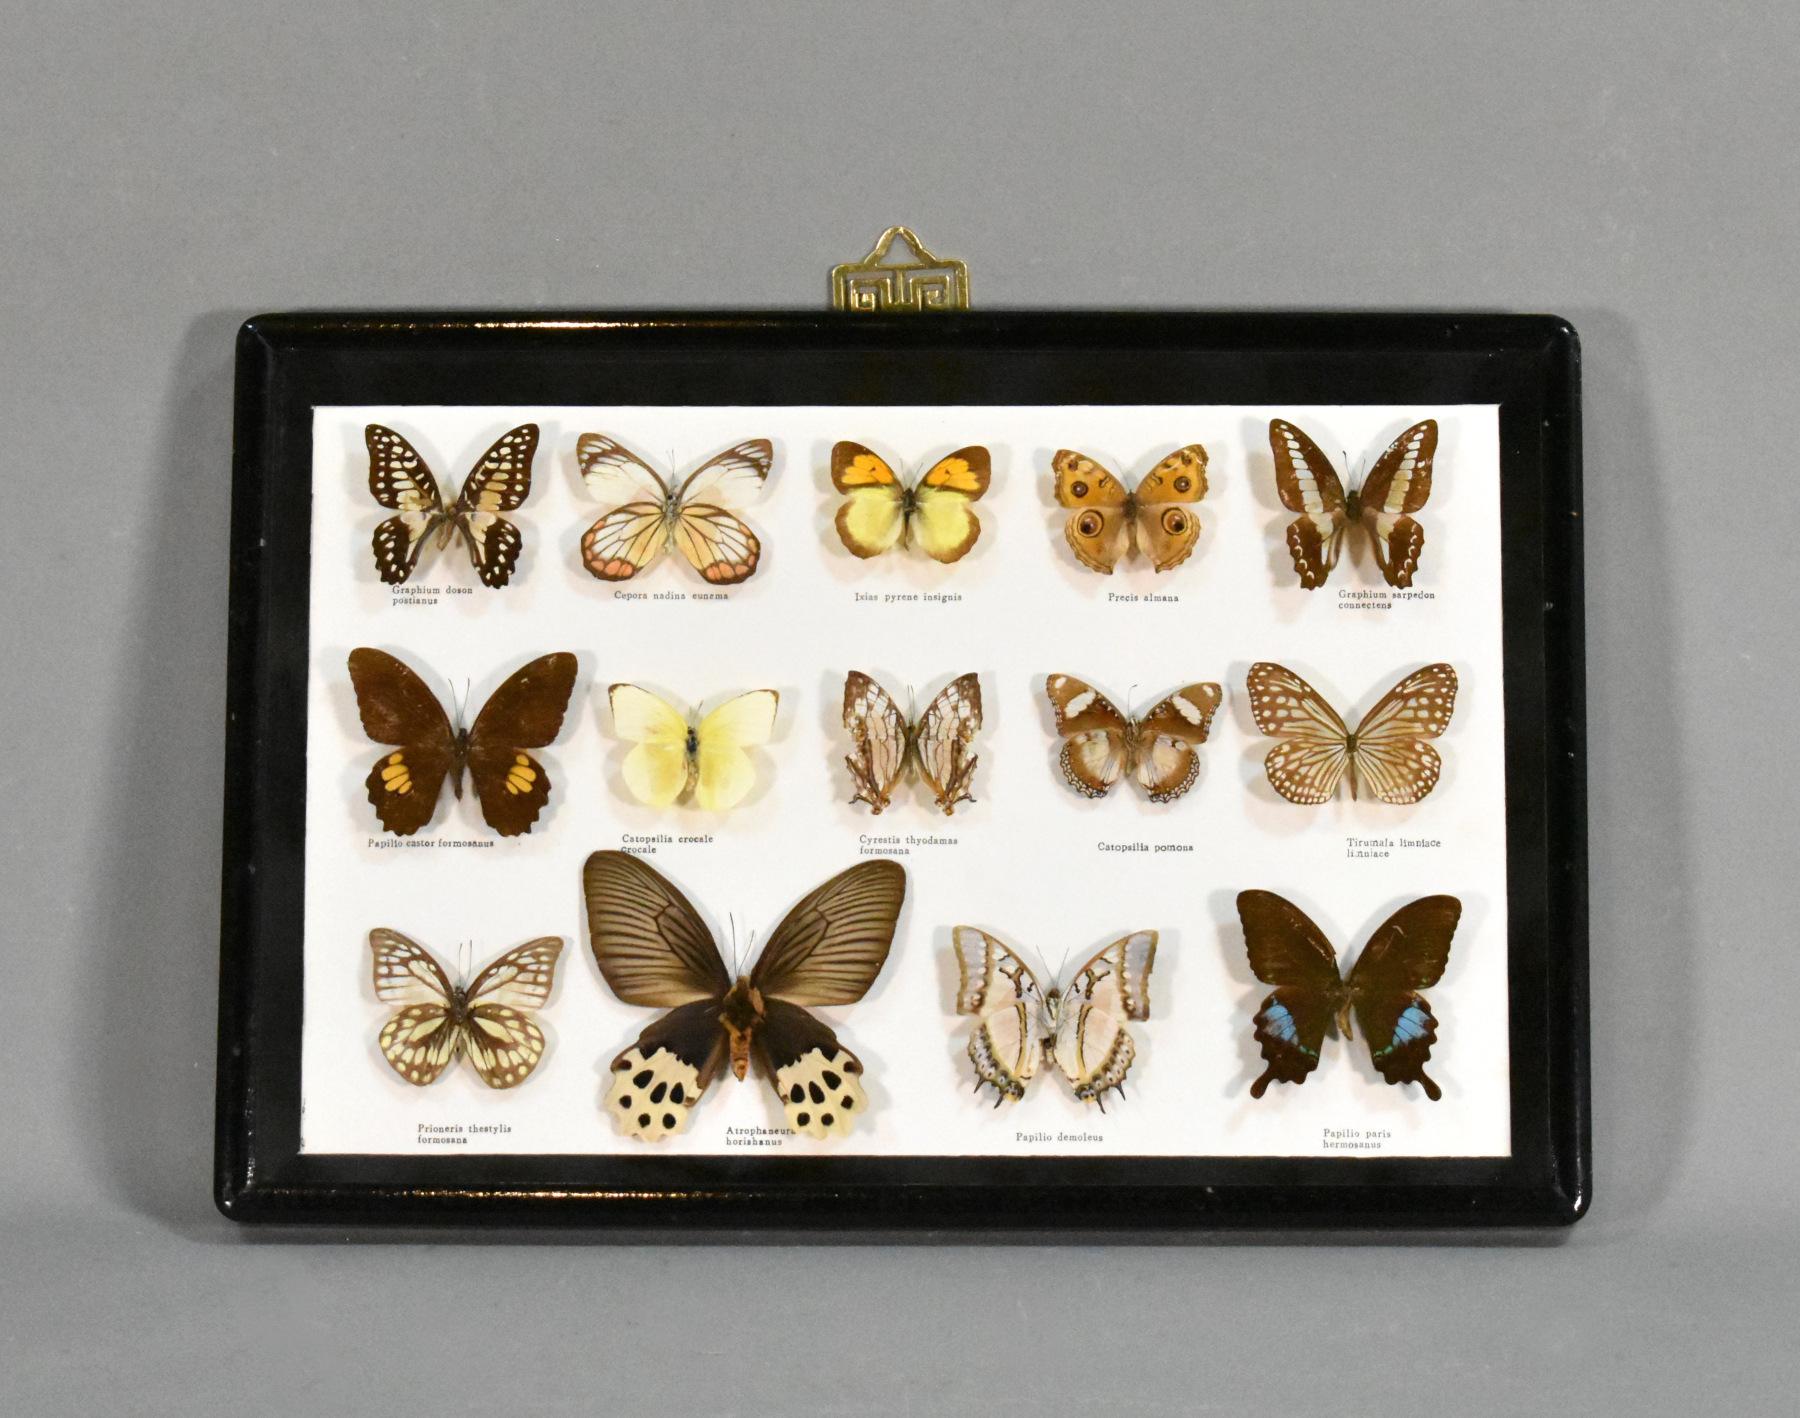 Vitrine d'entomologie taxidermique pour papillons

Une belle collection de papillons présentée dans une vitrine vitrée sur mesure avec un crochet de suspension à l'arrière.

Les quatorze spécimens ont été identifiés et marqués de leur nom